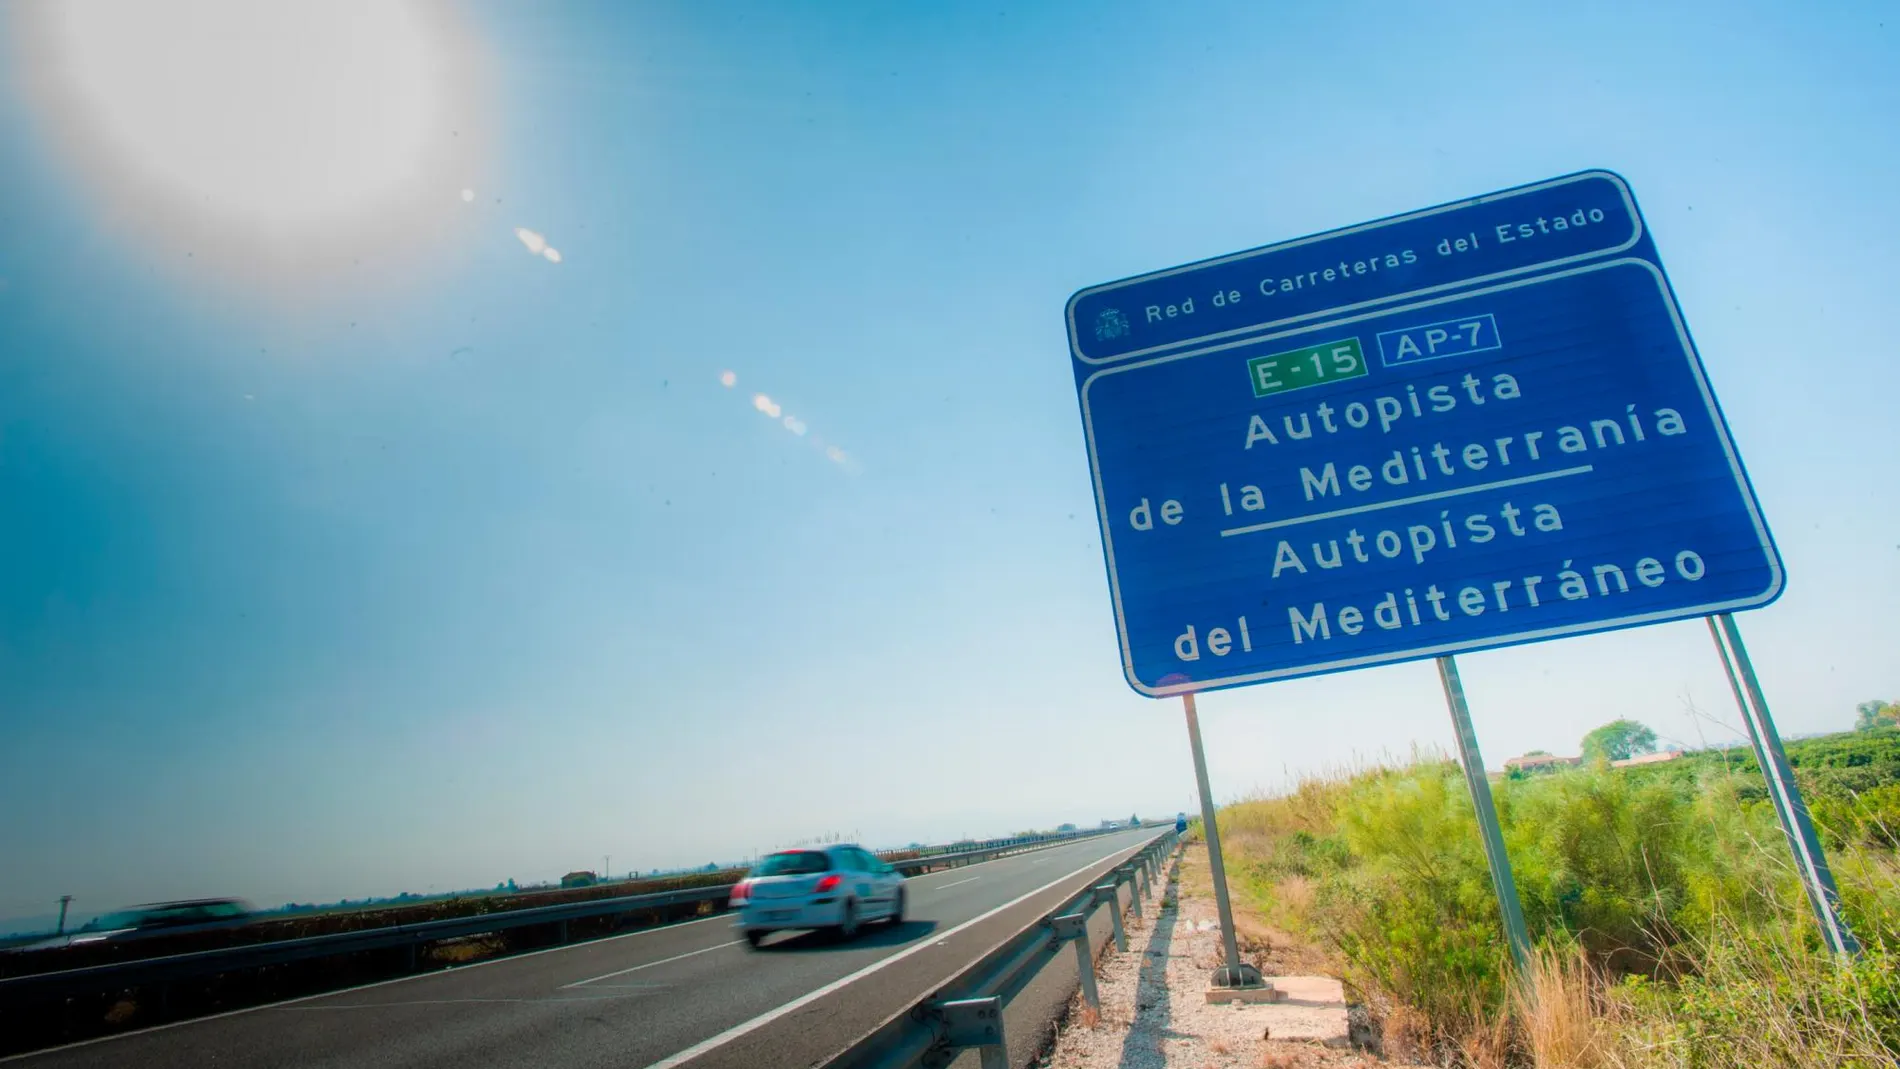 El Gobierno ha prometido que la AP-7 será gratuita en la Comunitat Valenciana a partir de enero de 2020, fecha en la que acaba la concesión